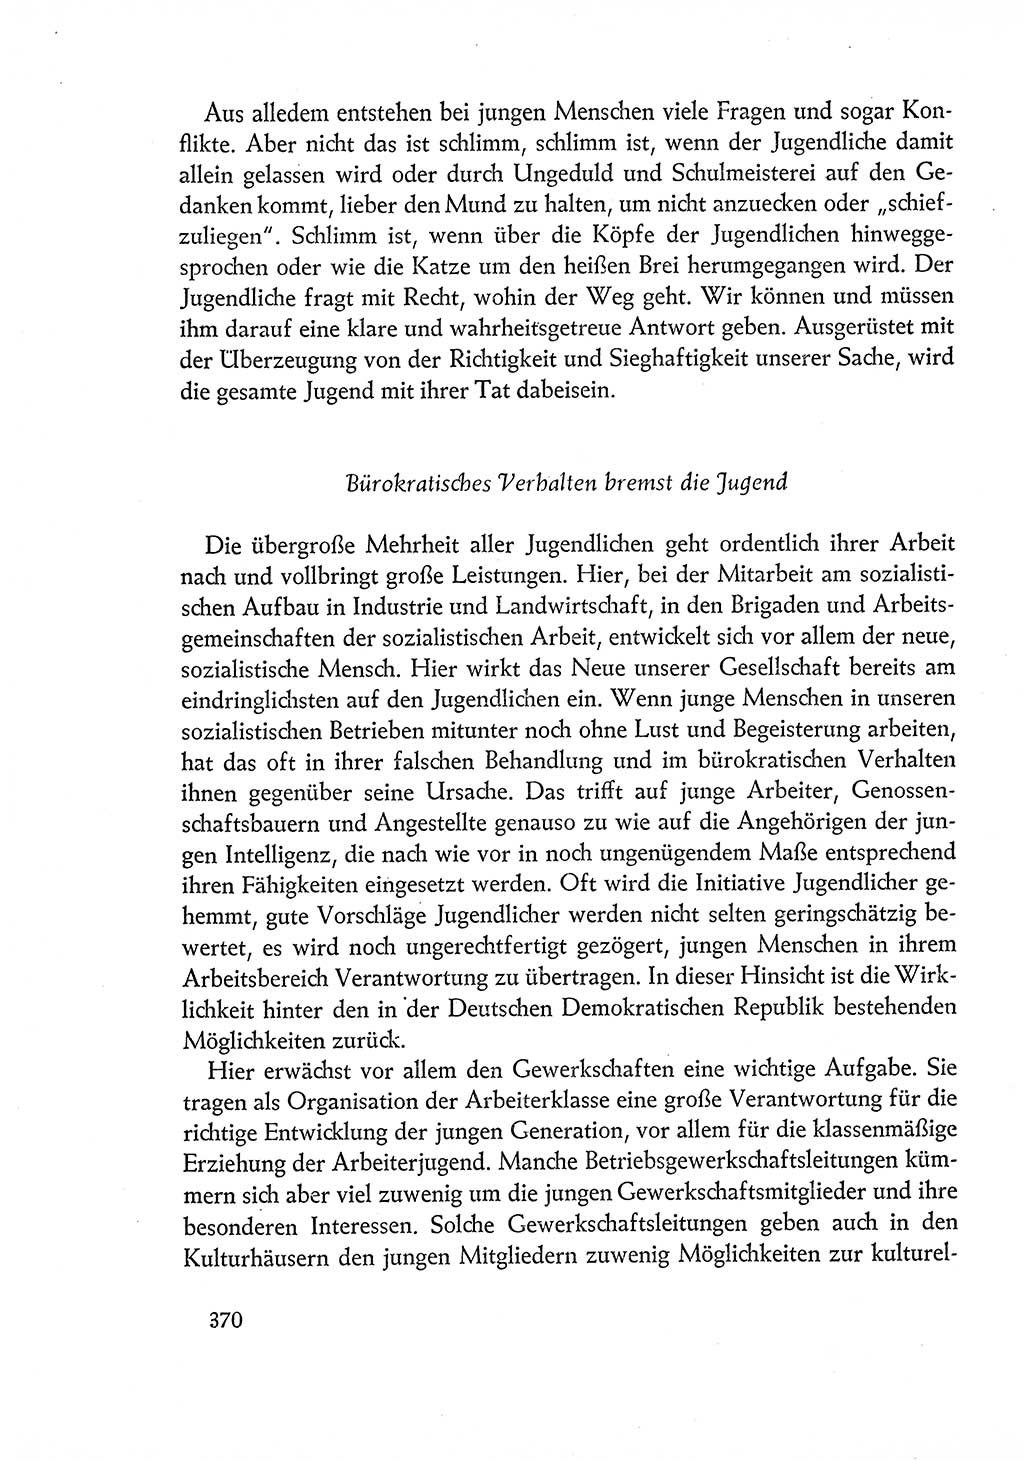 Dokumente der Sozialistischen Einheitspartei Deutschlands (SED) [Deutsche Demokratische Republik (DDR)] 1960-1961, Seite 370 (Dok. SED DDR 1960-1961, S. 370)